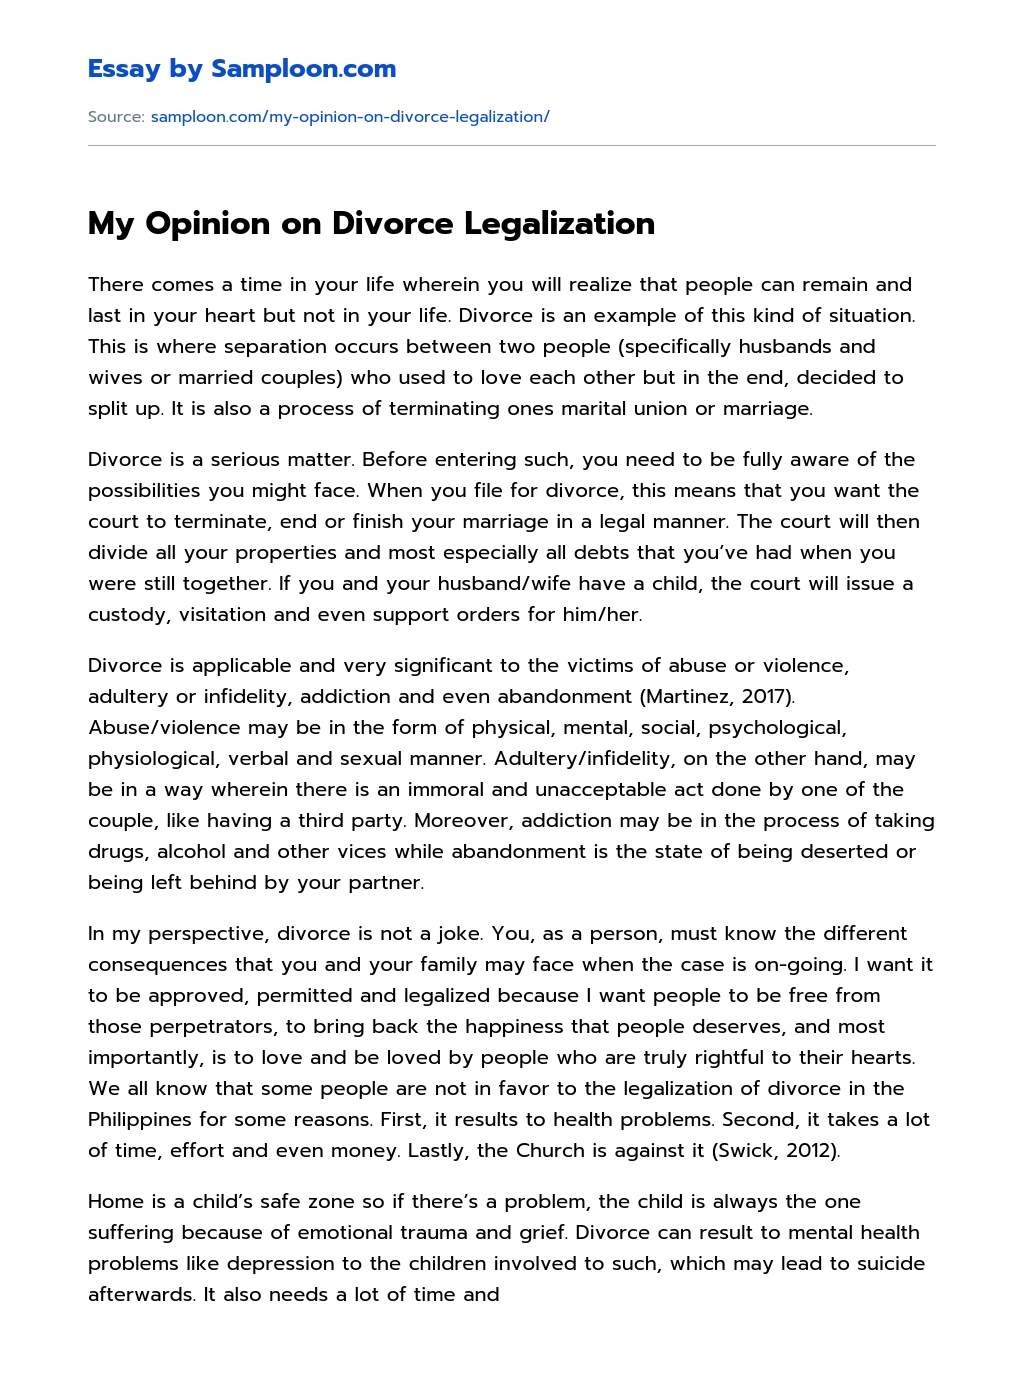 legalization of divorce argumentative essay